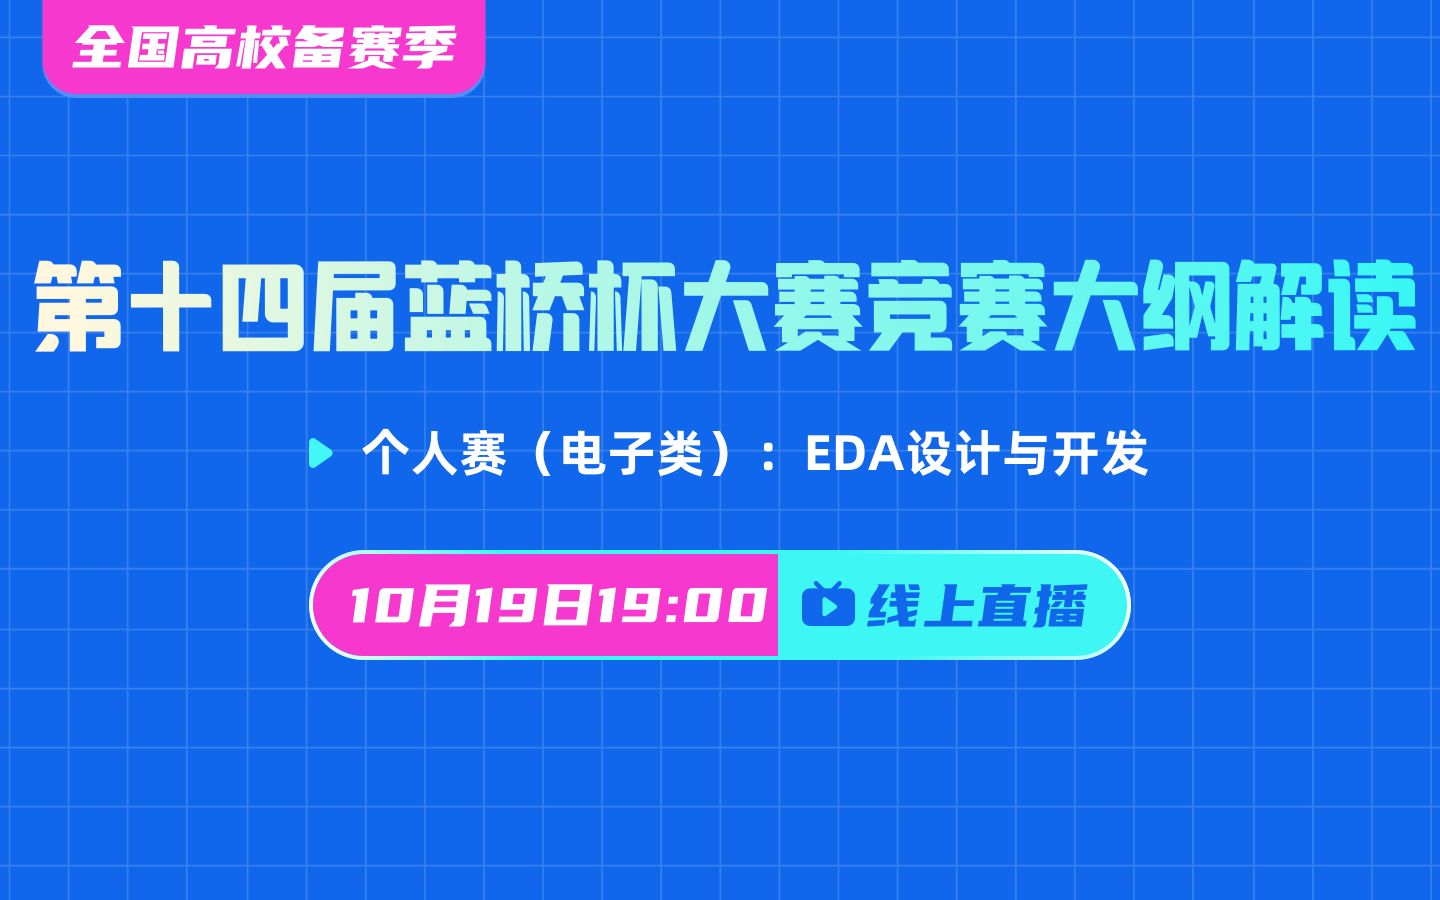 十四届蓝桥杯大赛比赛大纲解读（eda)-2022年10月19日